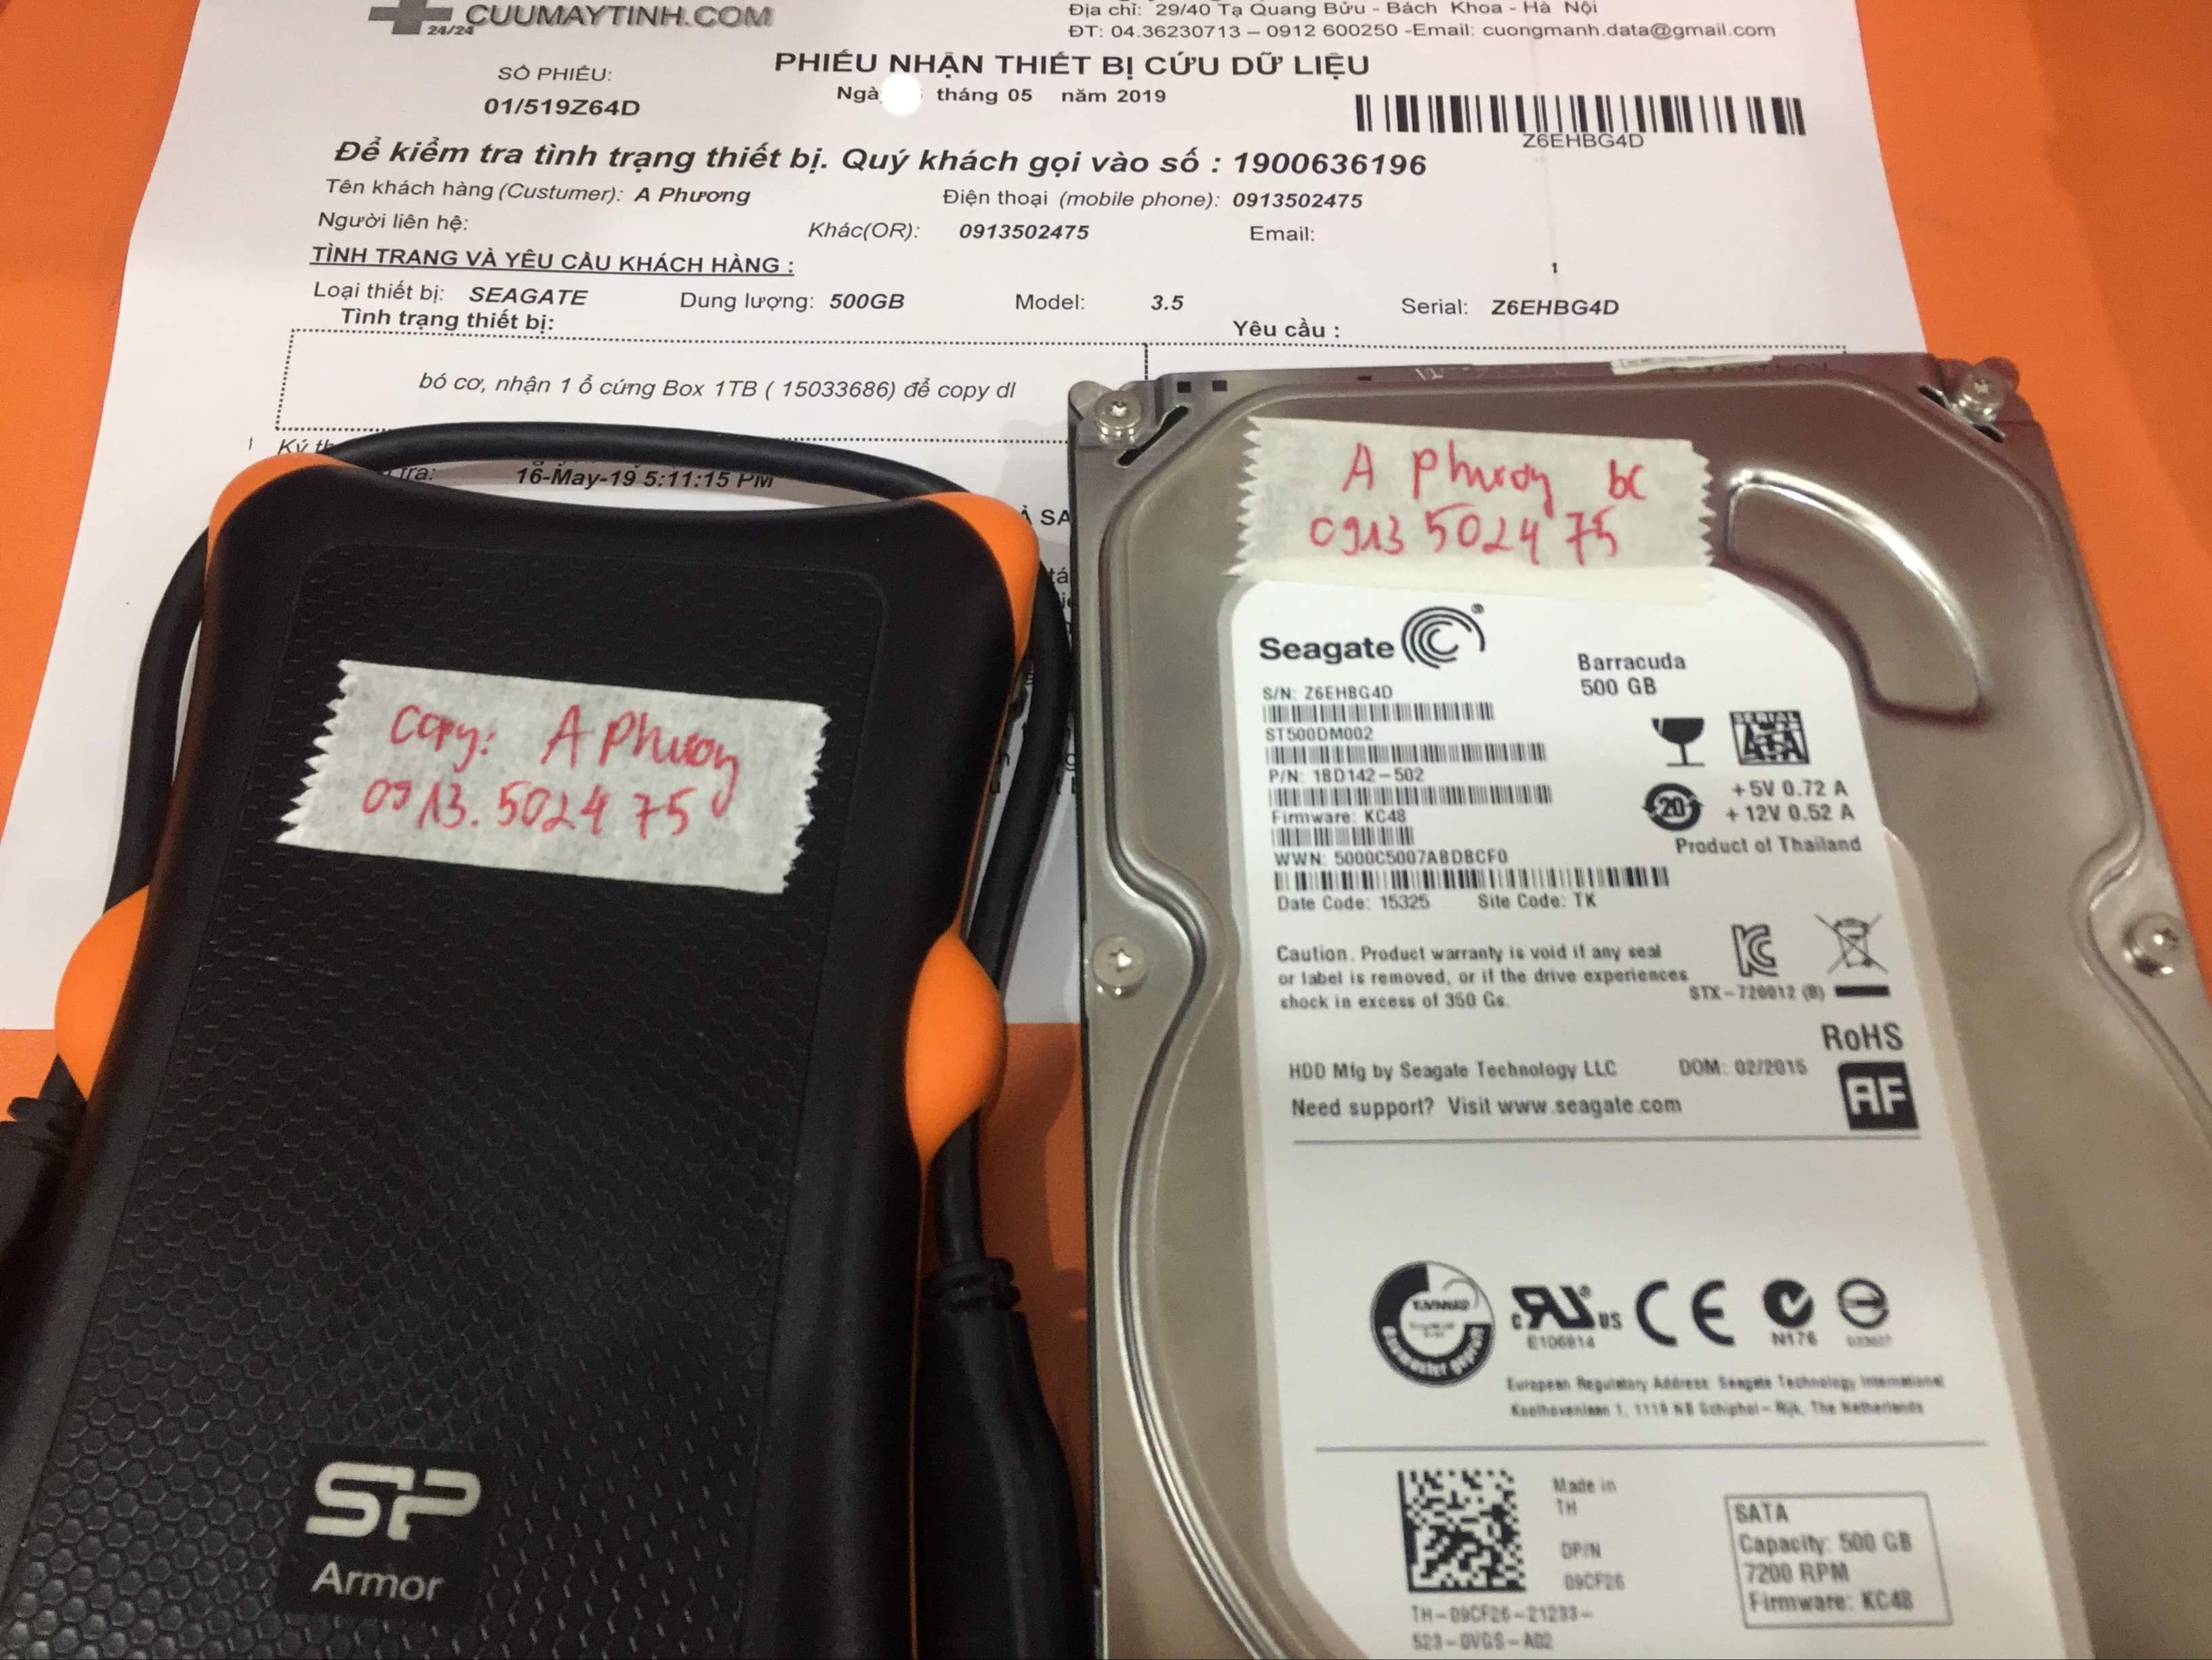 Khôi phục dữ liệu ổ cứng Seagate 500GB bó cơ 18/05/2019 - cuumaytinh